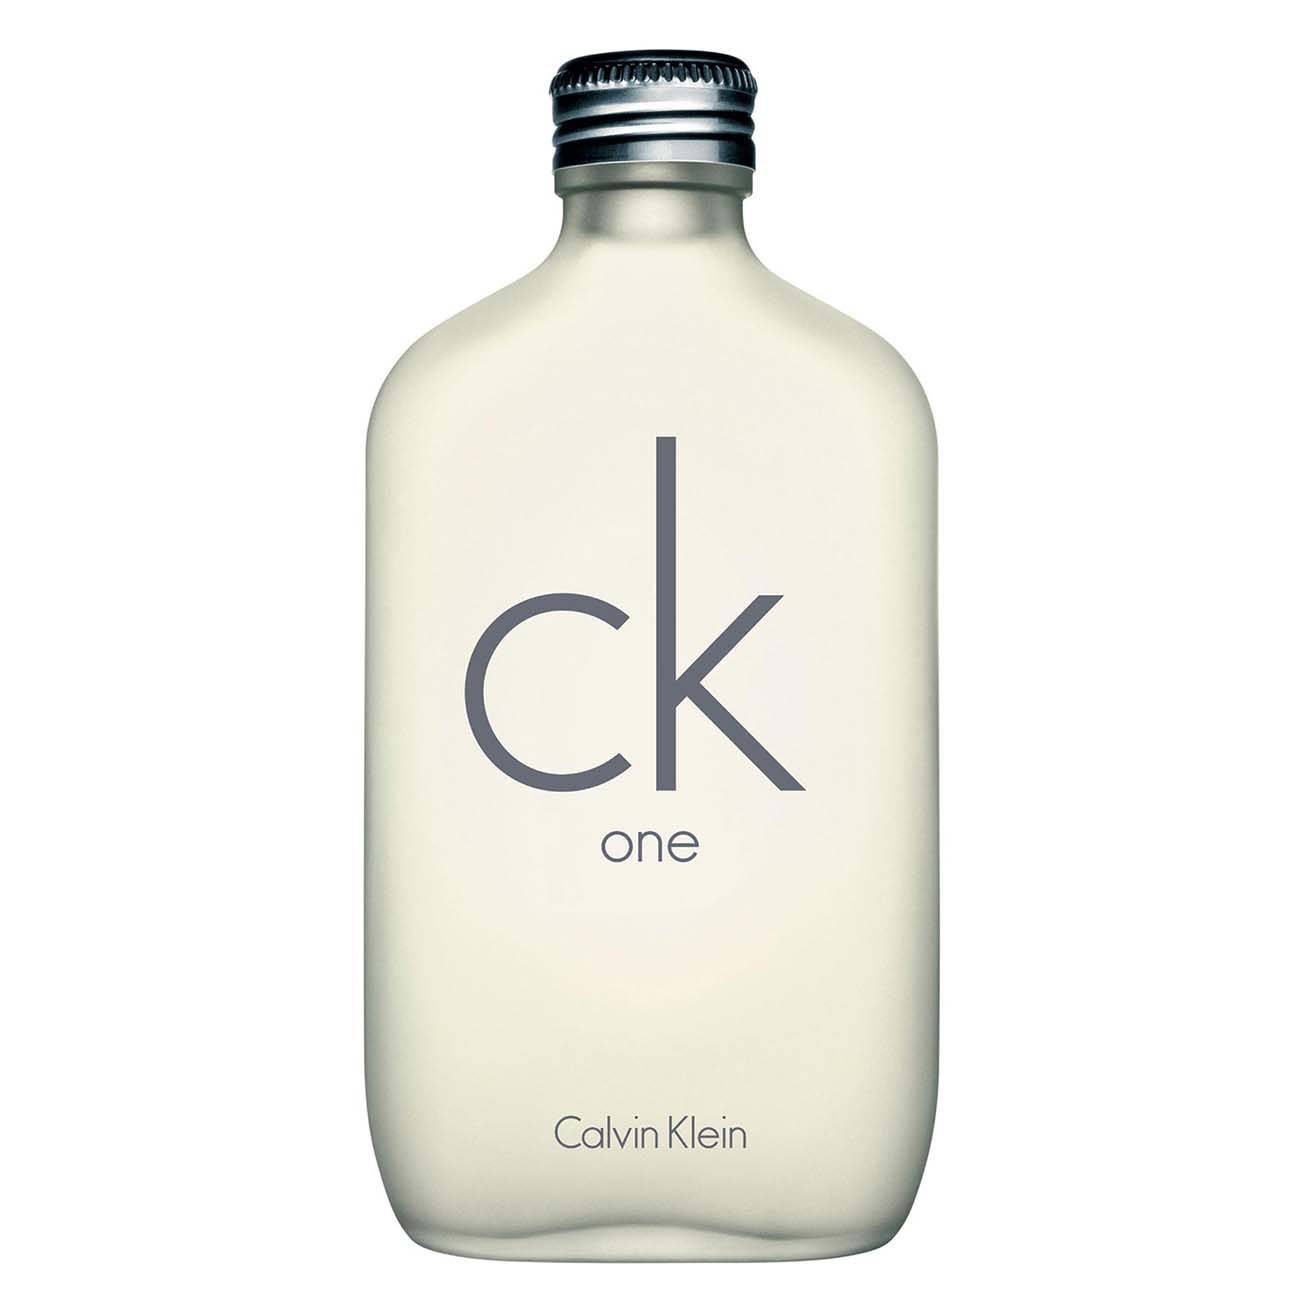 Ck One 100ml - Calvin Klein